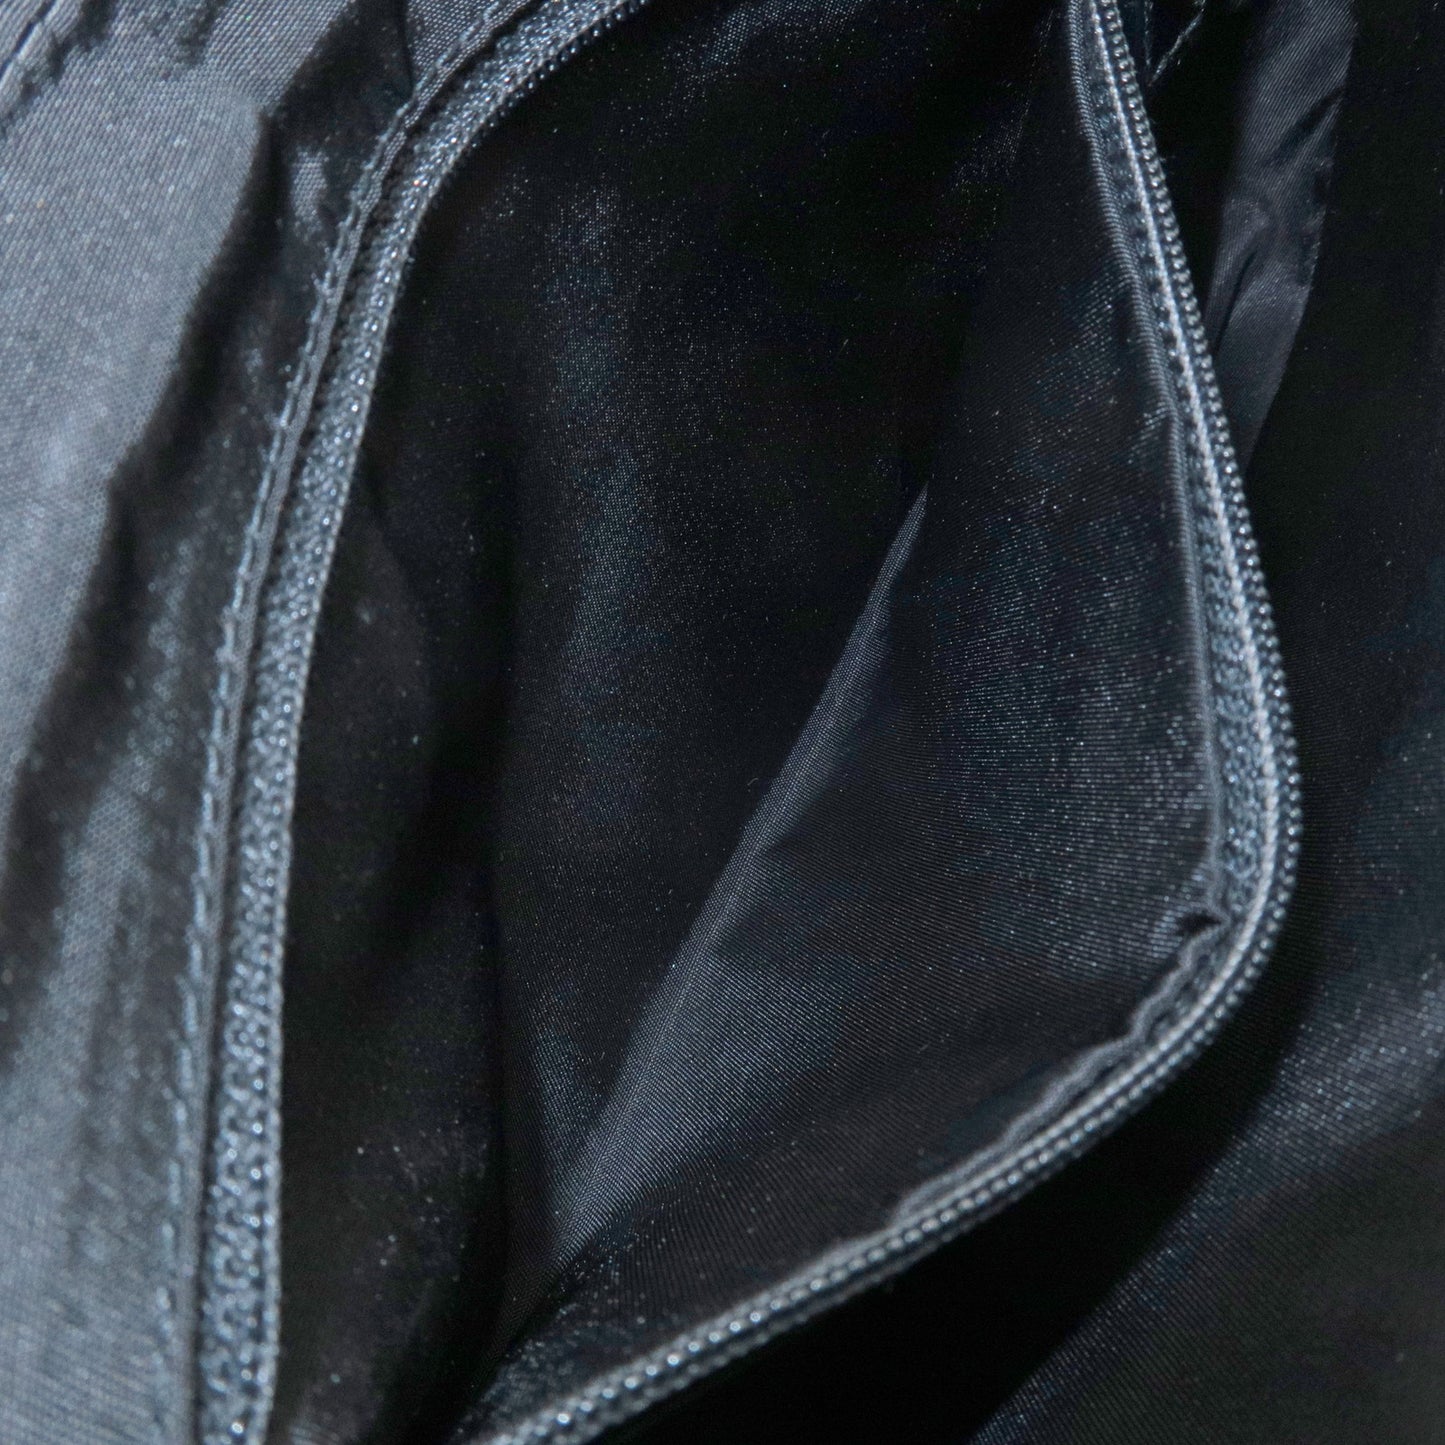 Christian Dior Enamel Leather Maris Pearl Shoulder Bag Black